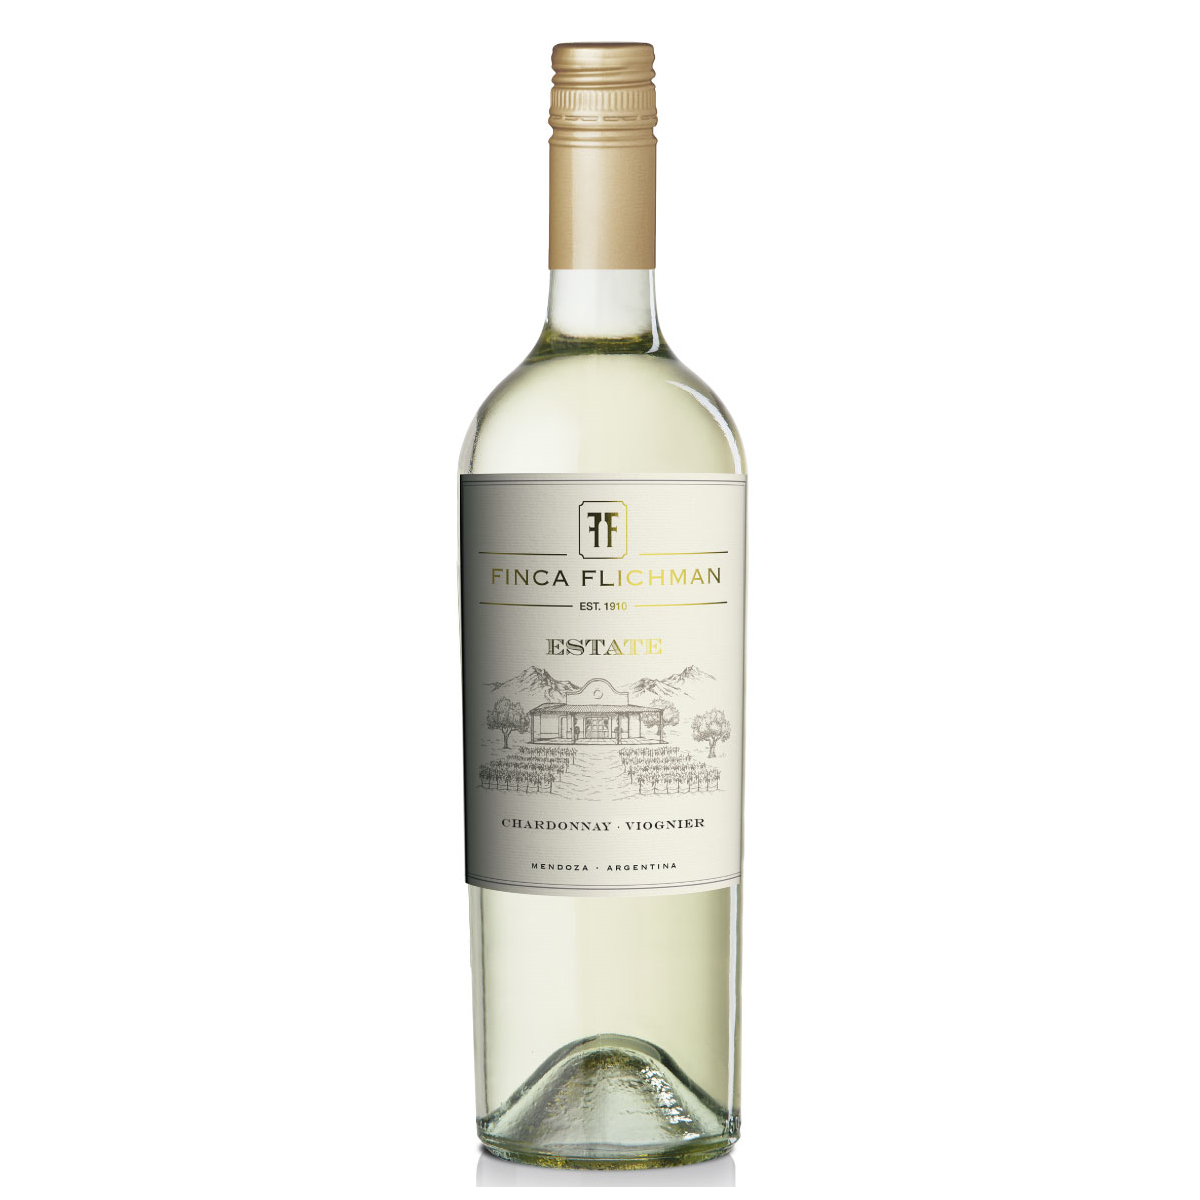 Finca Flichman Estate Chardonnay-Viognier White Wine – Argentina